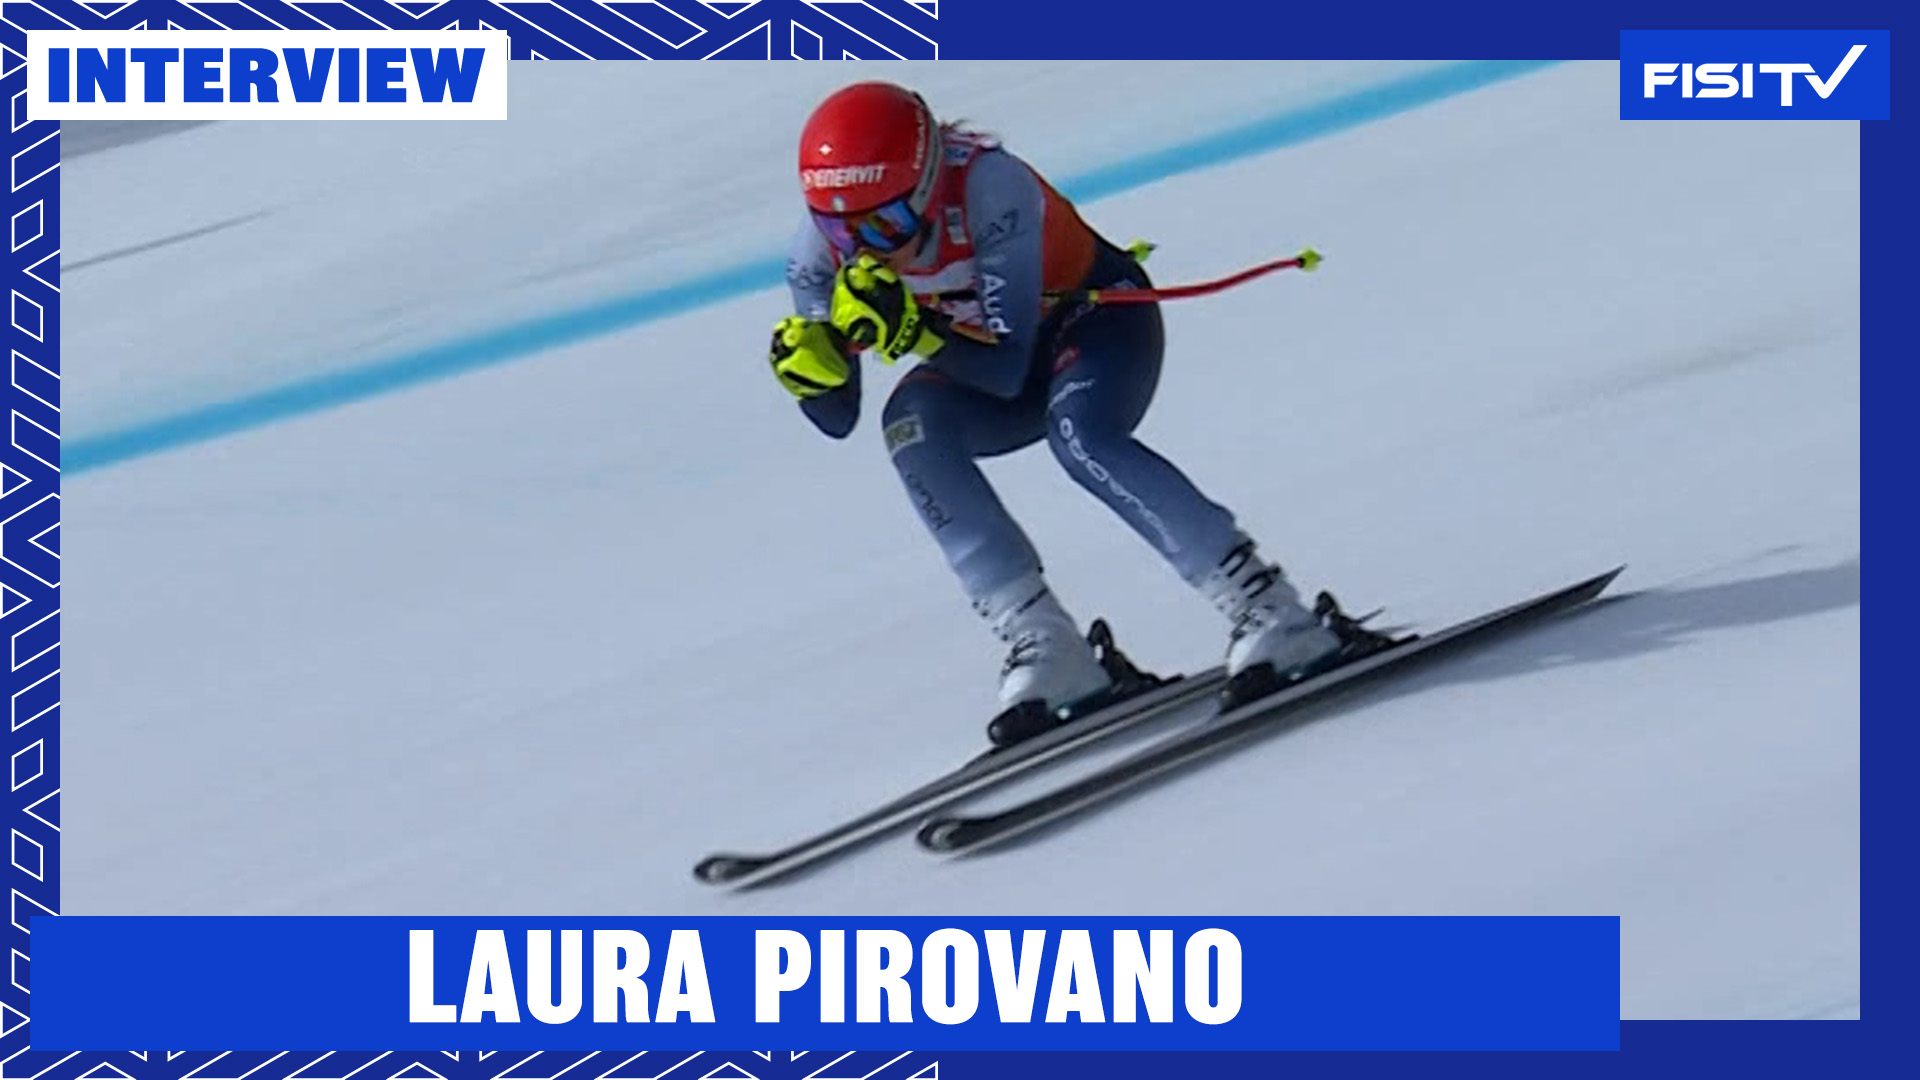 Laura Pirovano | “Una giornata super positiva” | FISI TV